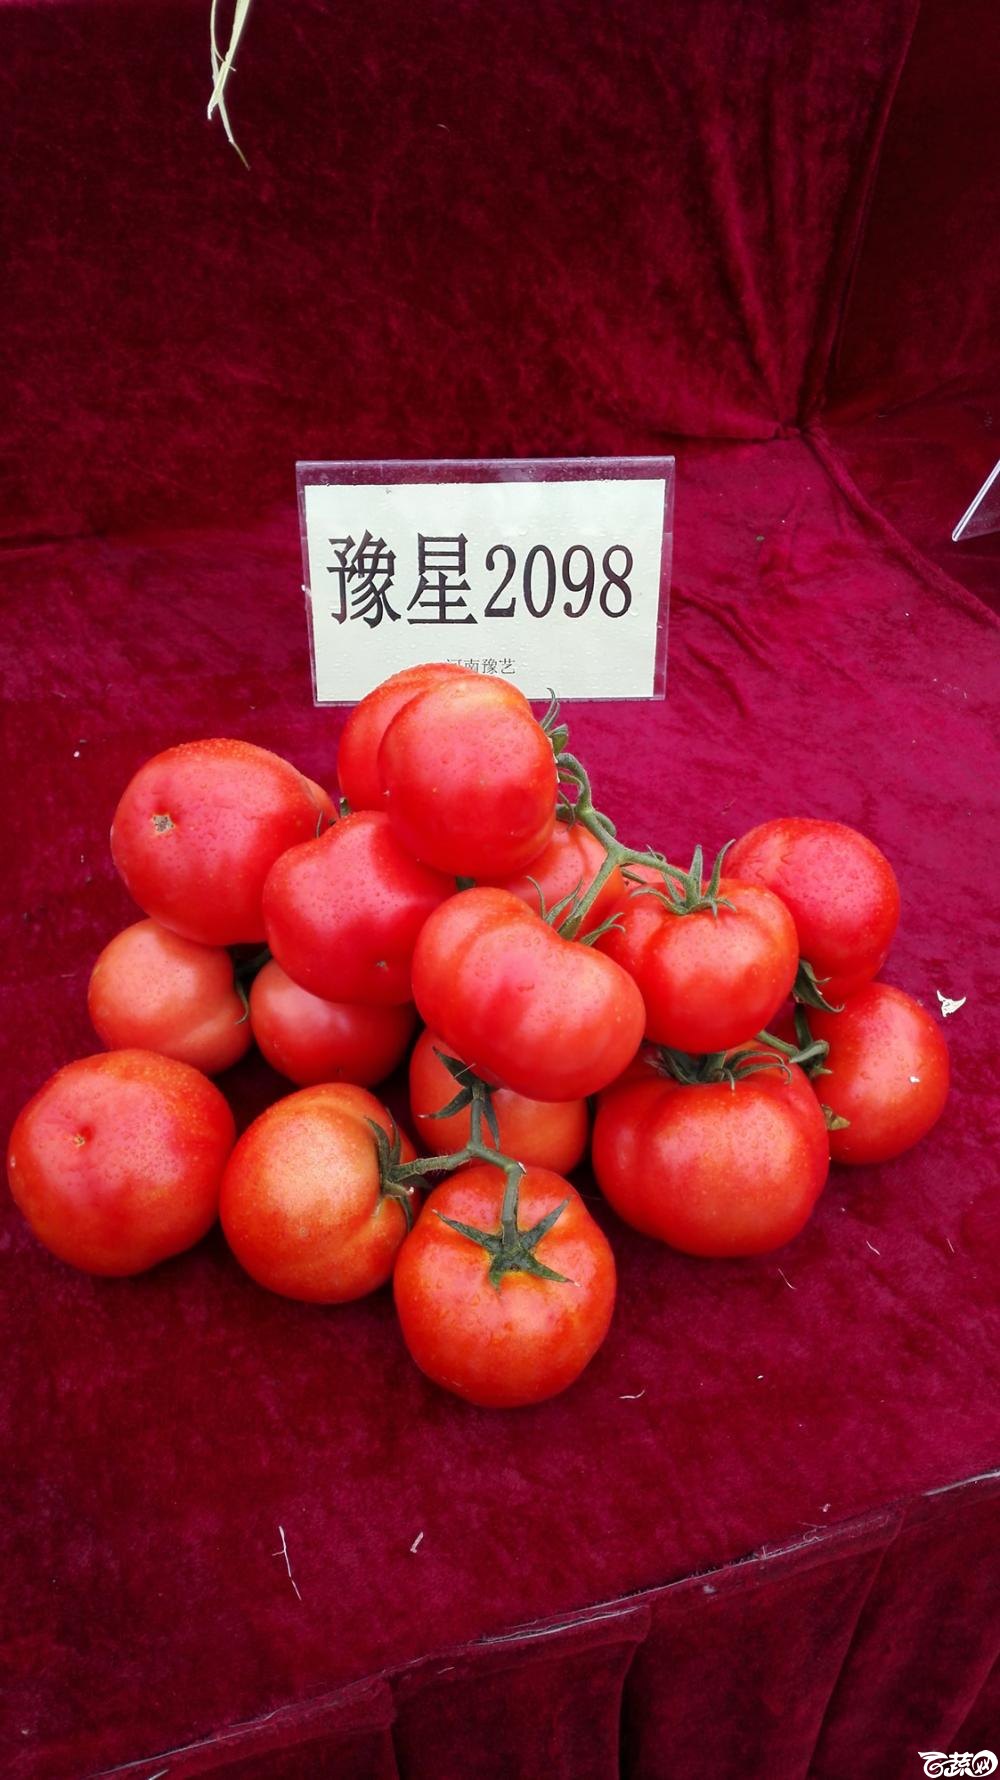 2014年12月8号中山蔬菜新品种展示会_番茄_002.jpg